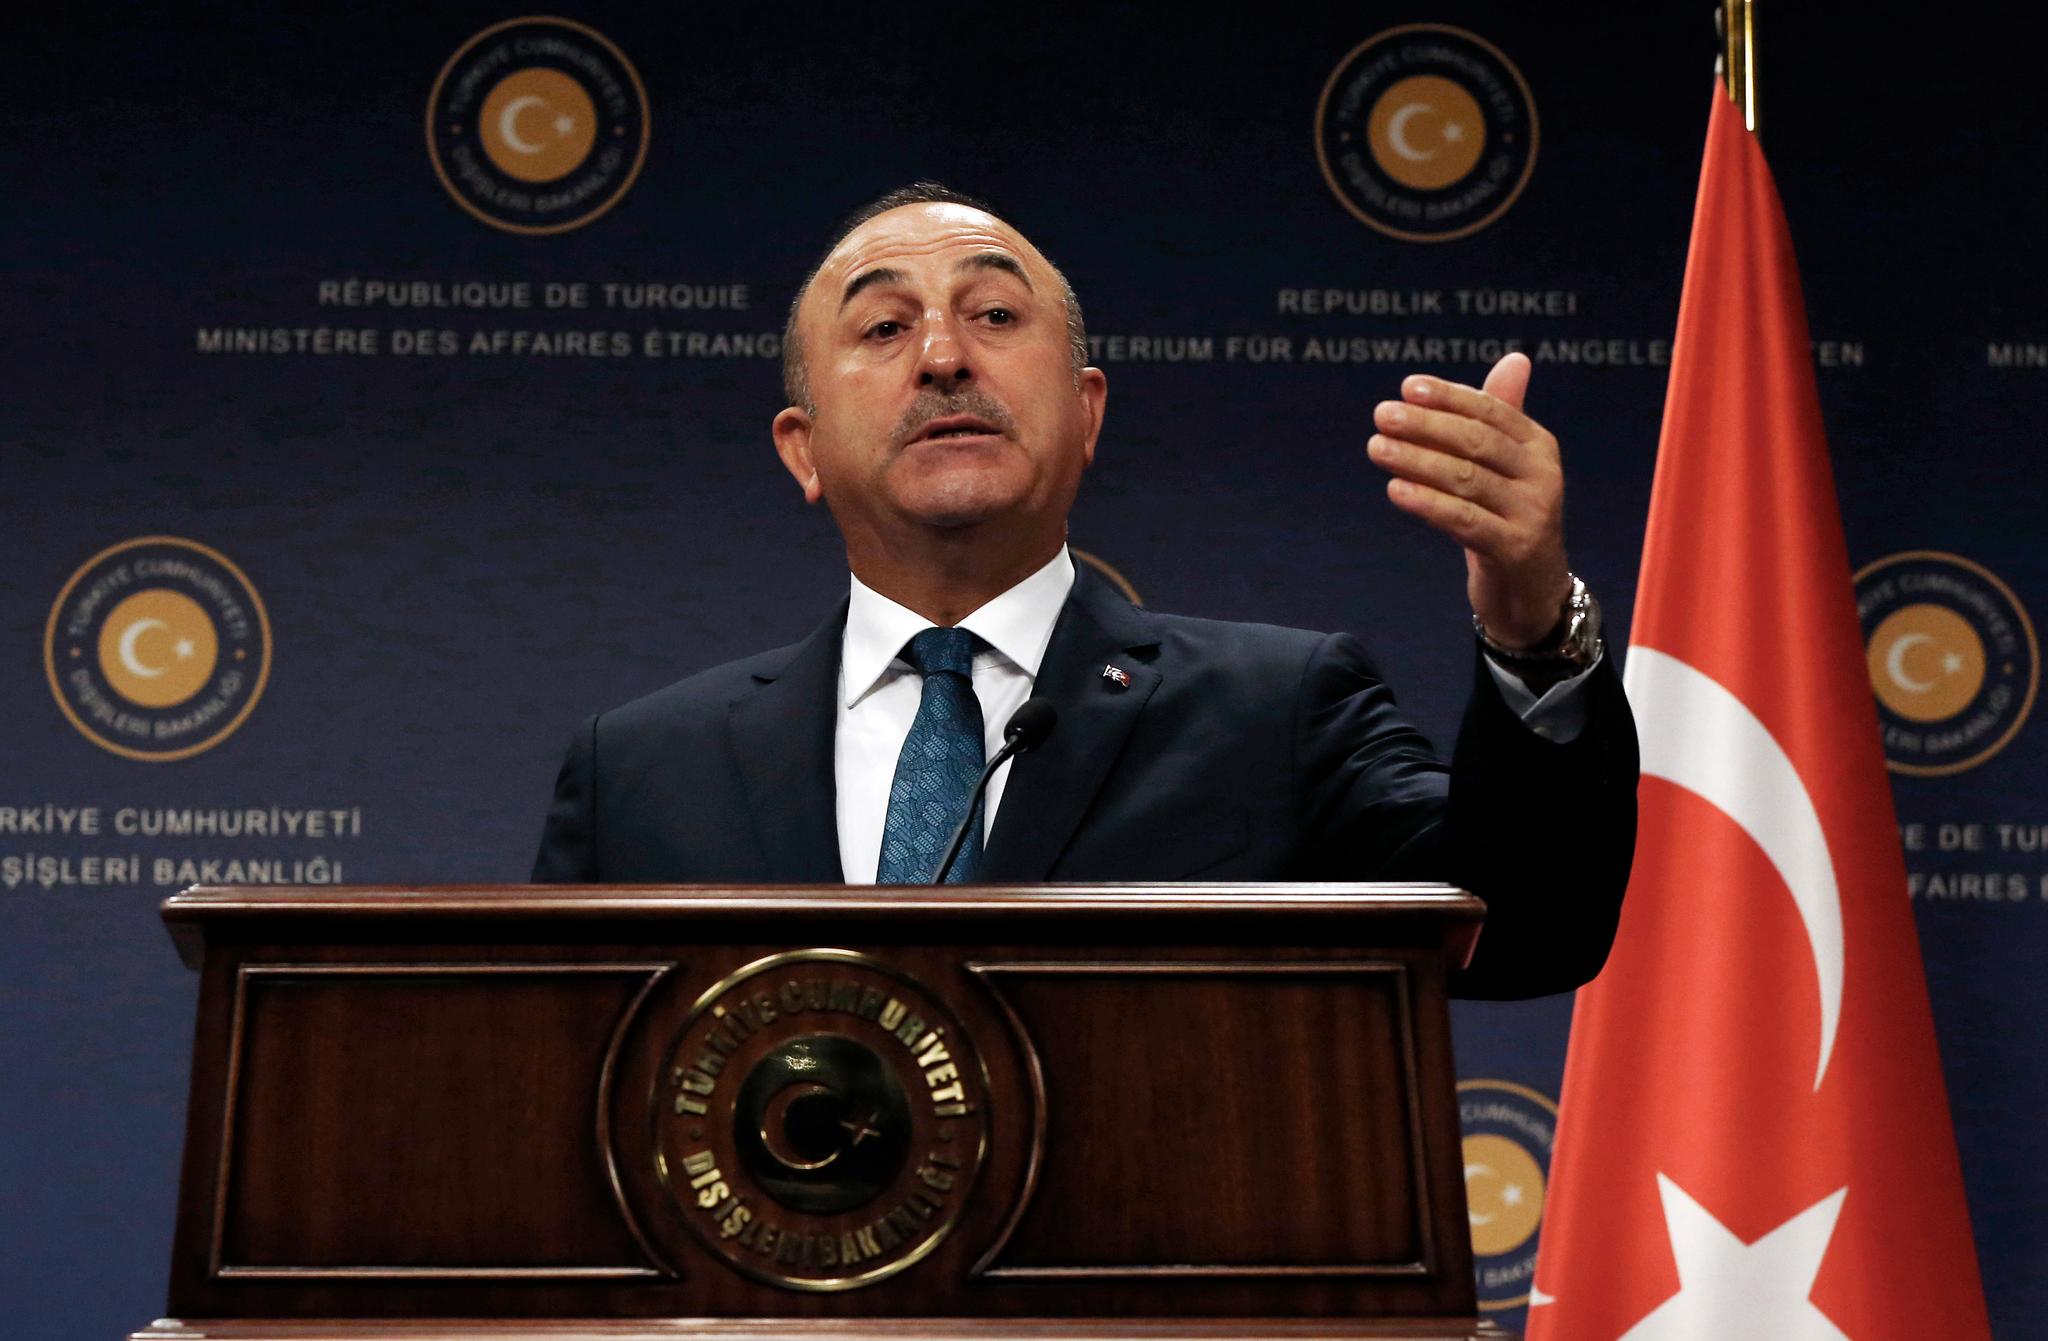  Tyrkias visestatsminister Hakan Cavusoglu hevder Gülen-tilhenger sto bak NATO-flausen under en øvelse i Stavanger. NATO-medlemmet Tyrkia ble fremstilt som fiende under øvelsen.